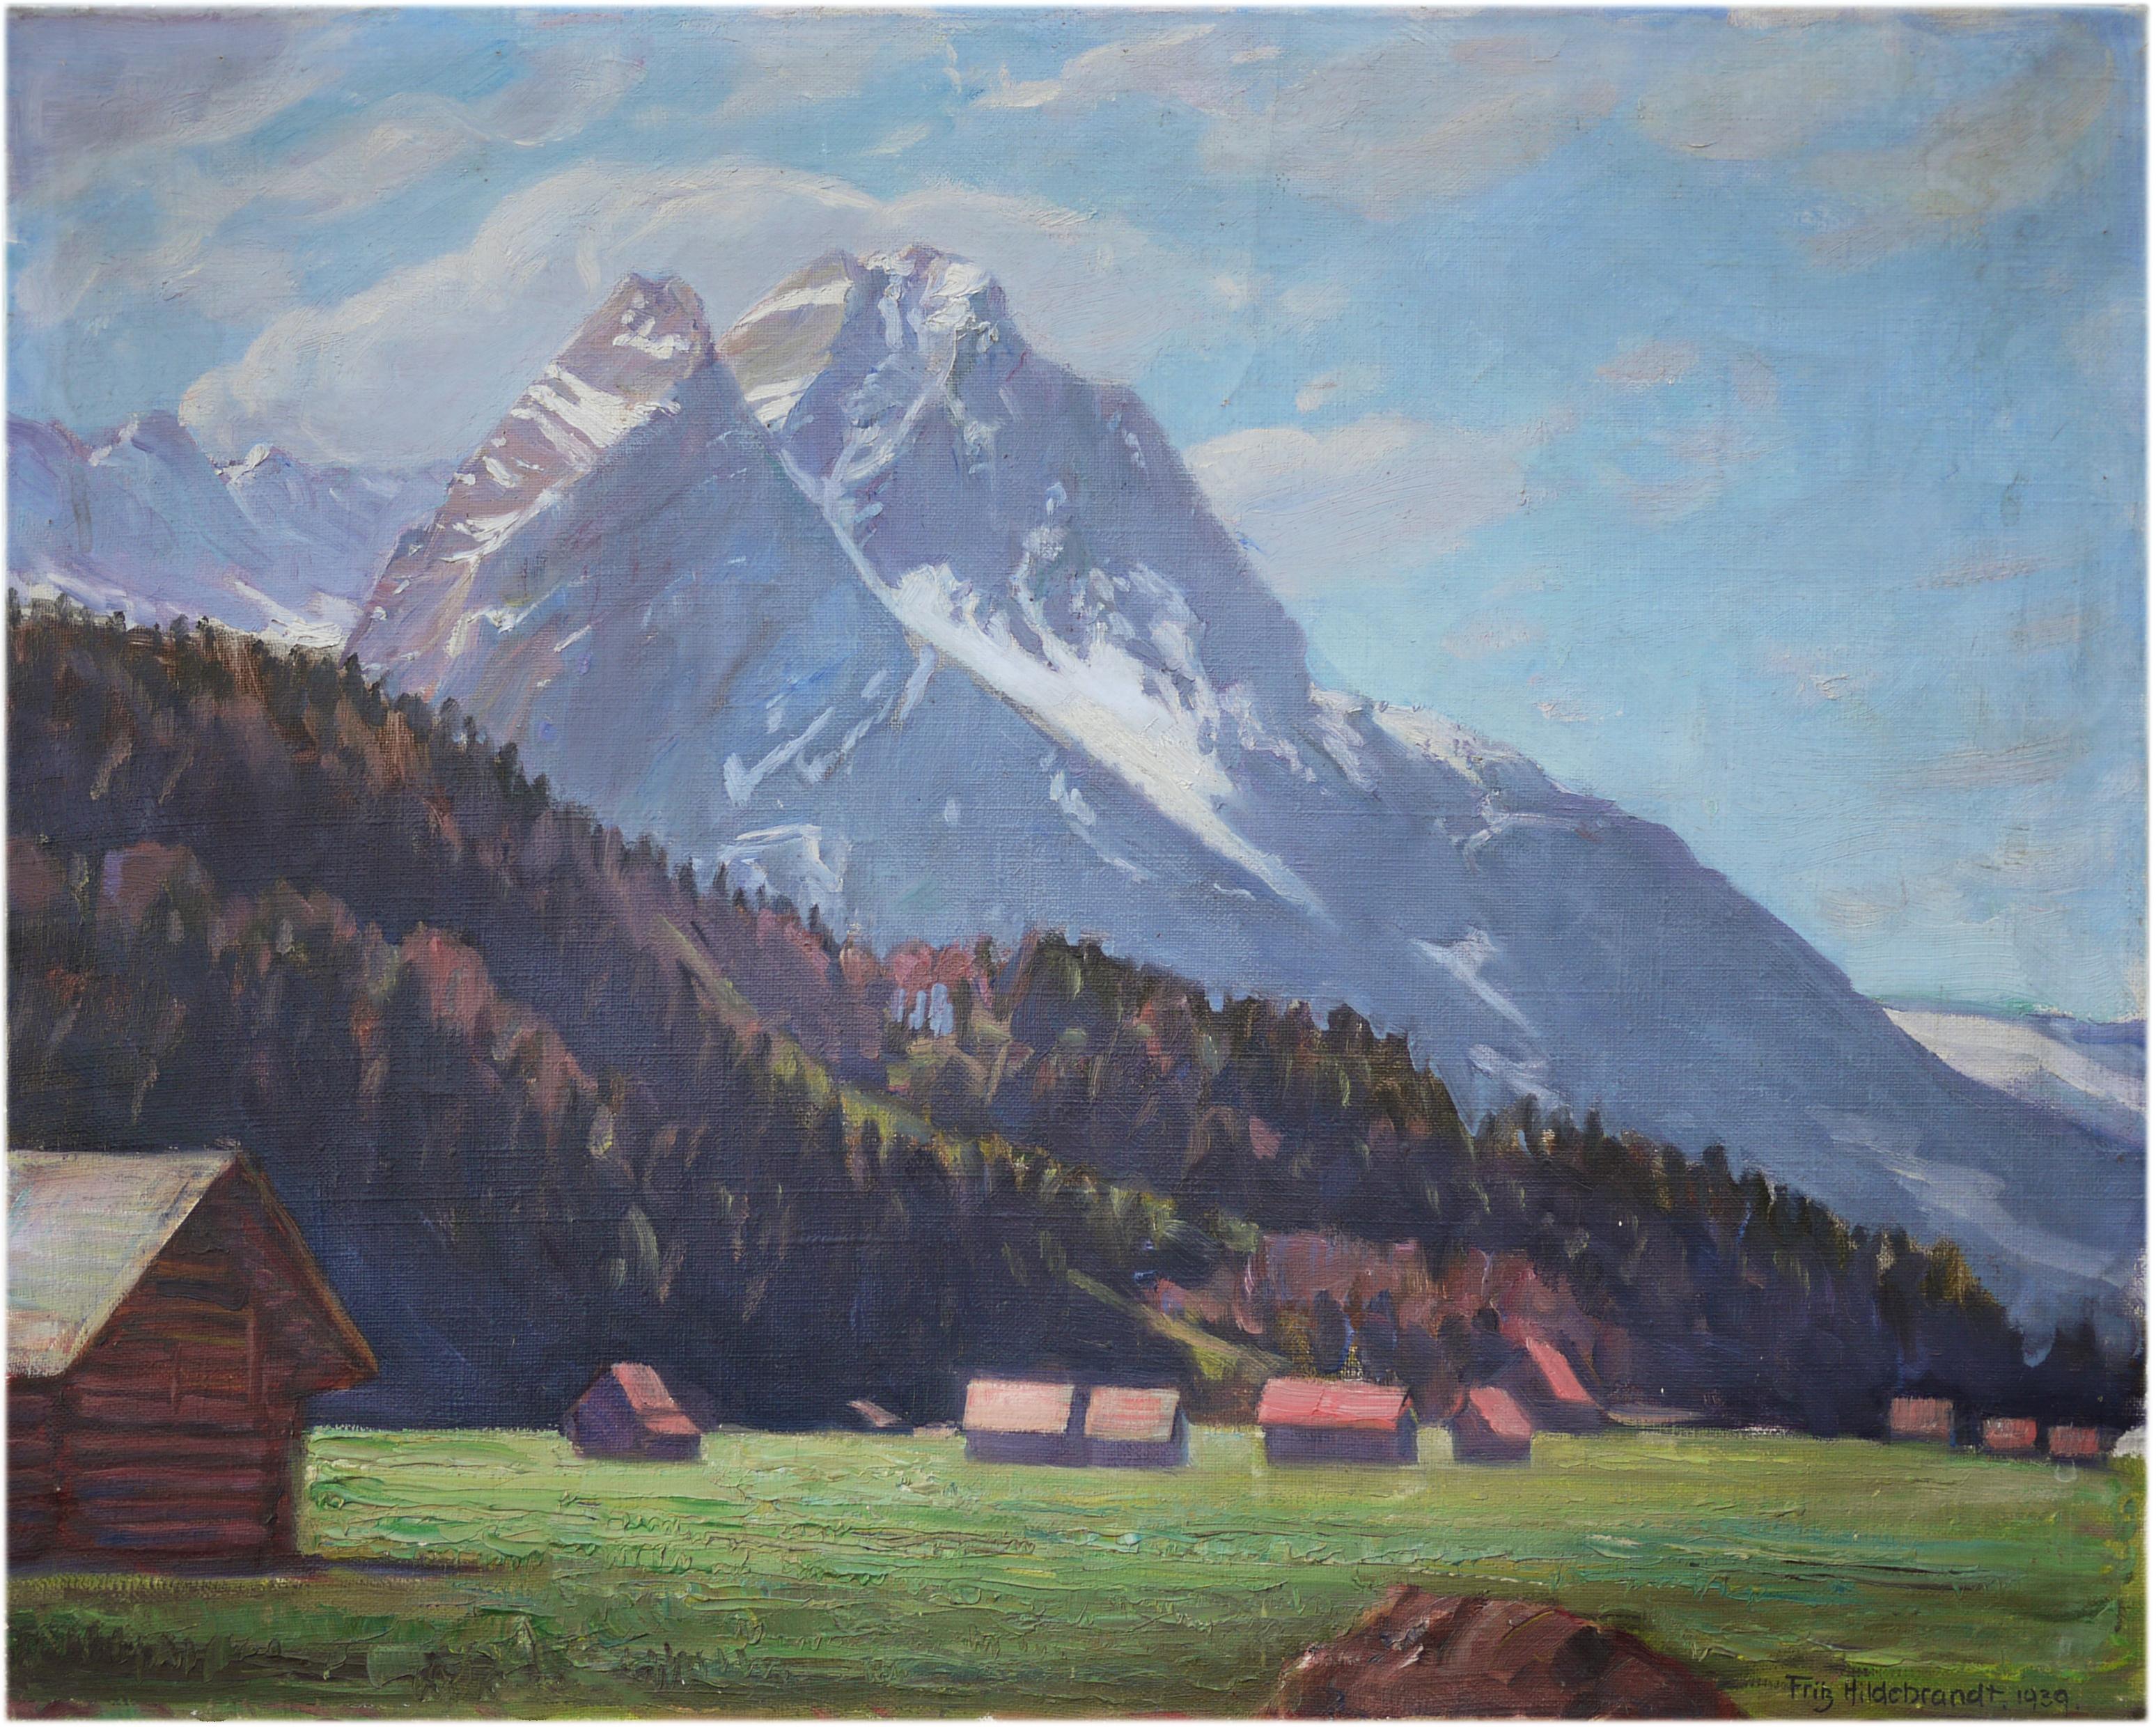 Fritz Hildebrandt (1878-1970) - Garmisch summer view with Waxenstein (Zugspitze) - oil on canvas - 1930

50 cm x 60 cm Unframed - 65 cm x 75 cm framed in antique fir
19 in x 23.6 in Unframed - 25.6 in x 29.5 in framed in antique fir

Summer